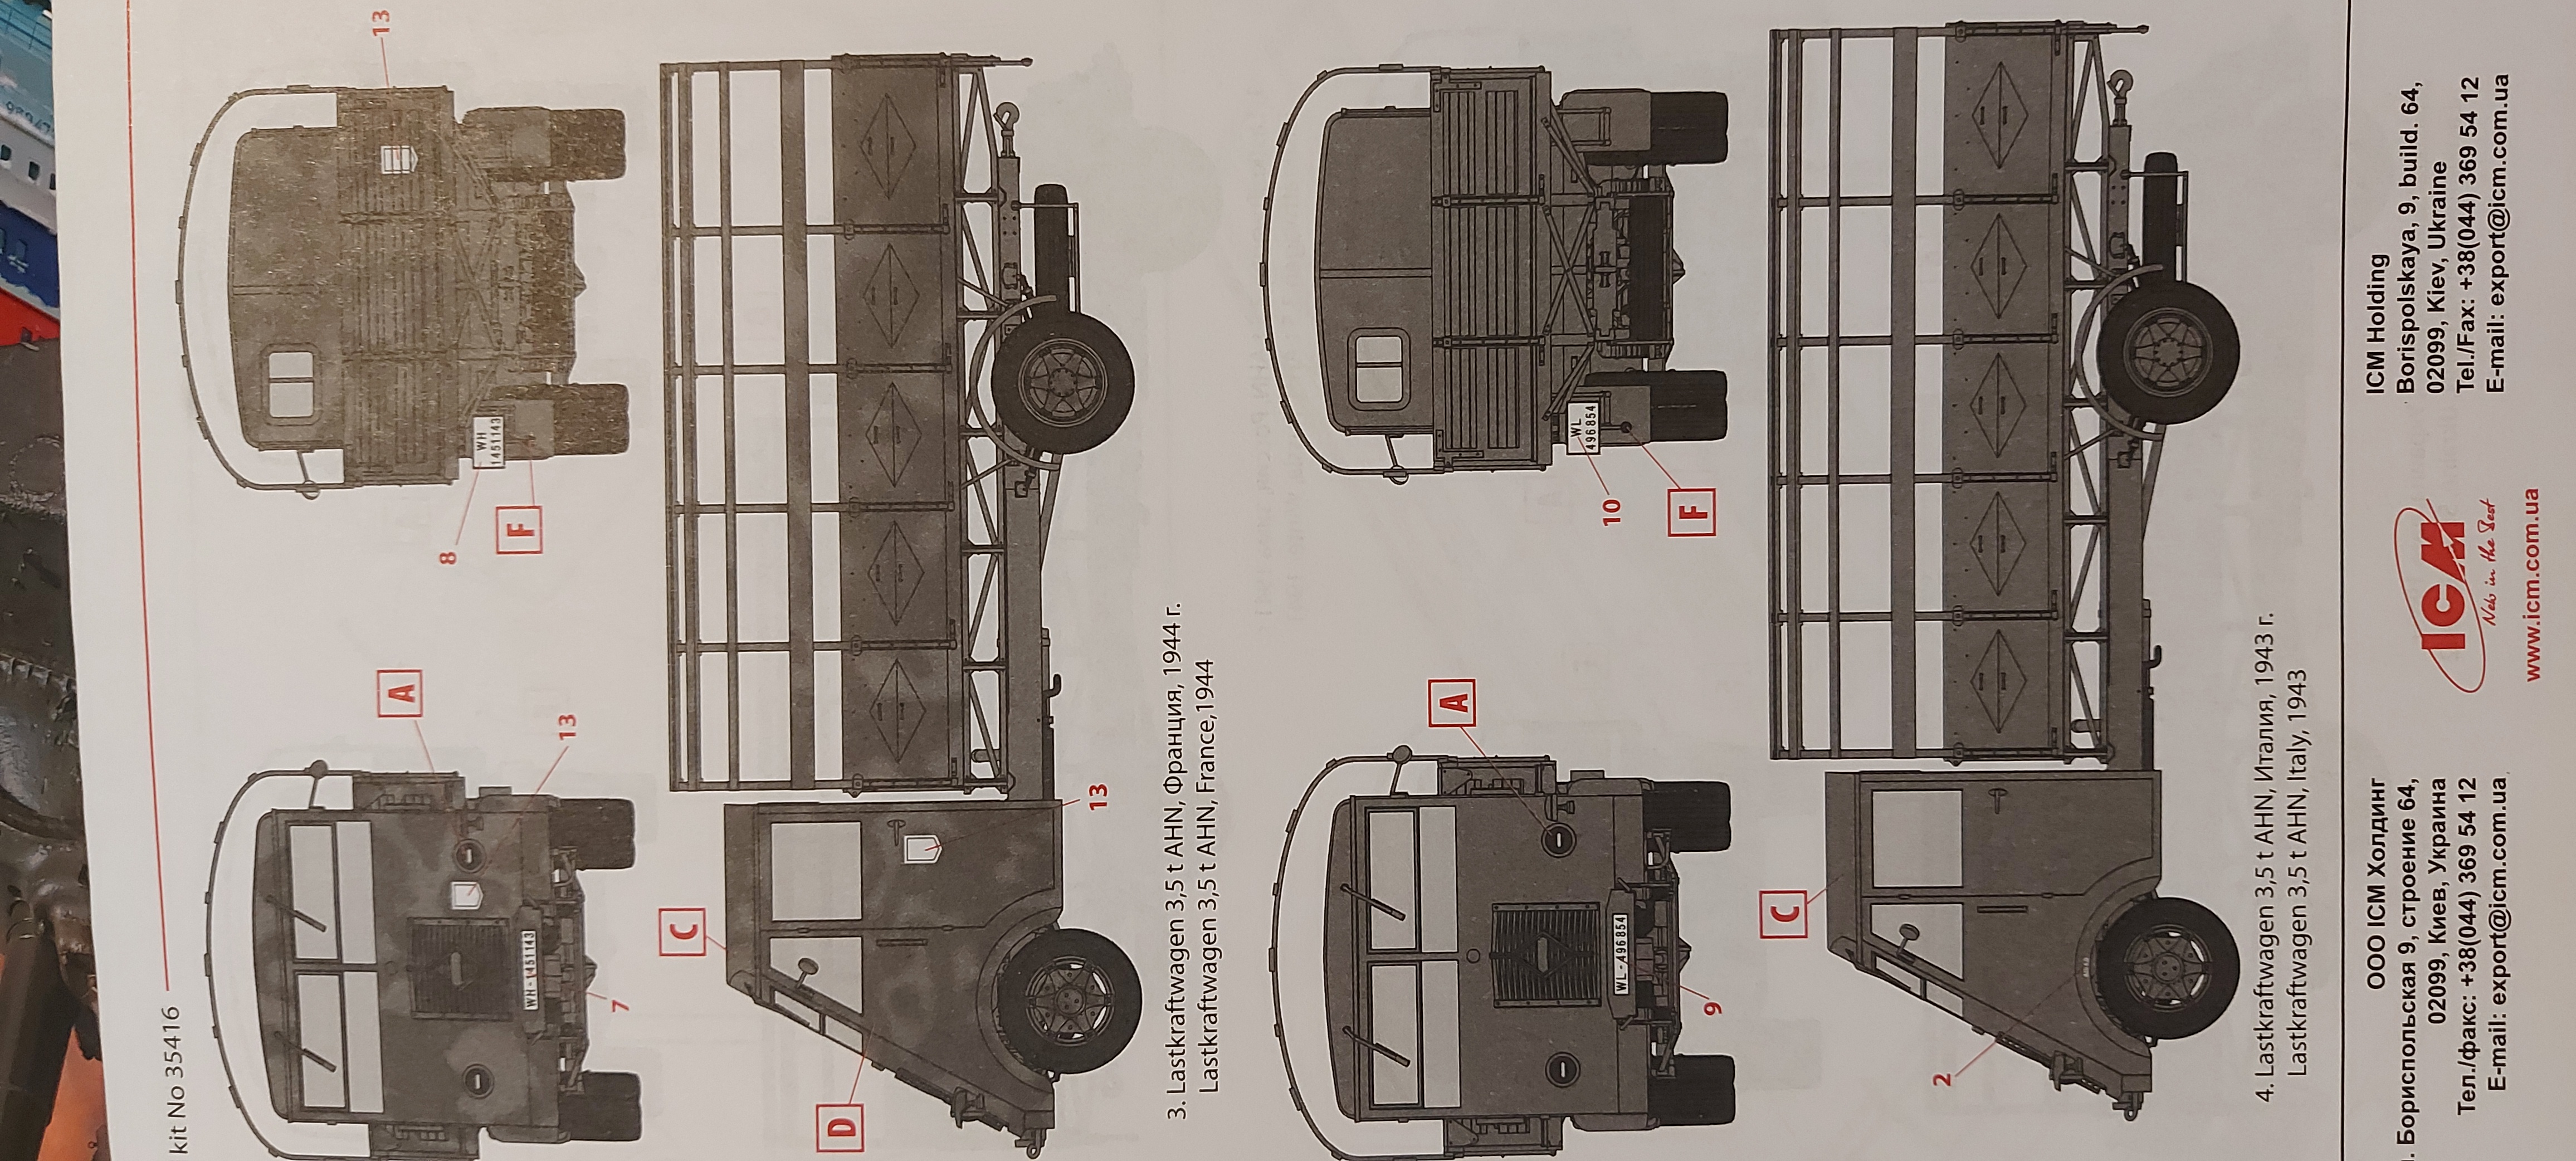 Фото Lastkraftwagen 3,5 t AHN, Грузовой автомобиль германской армии II MB